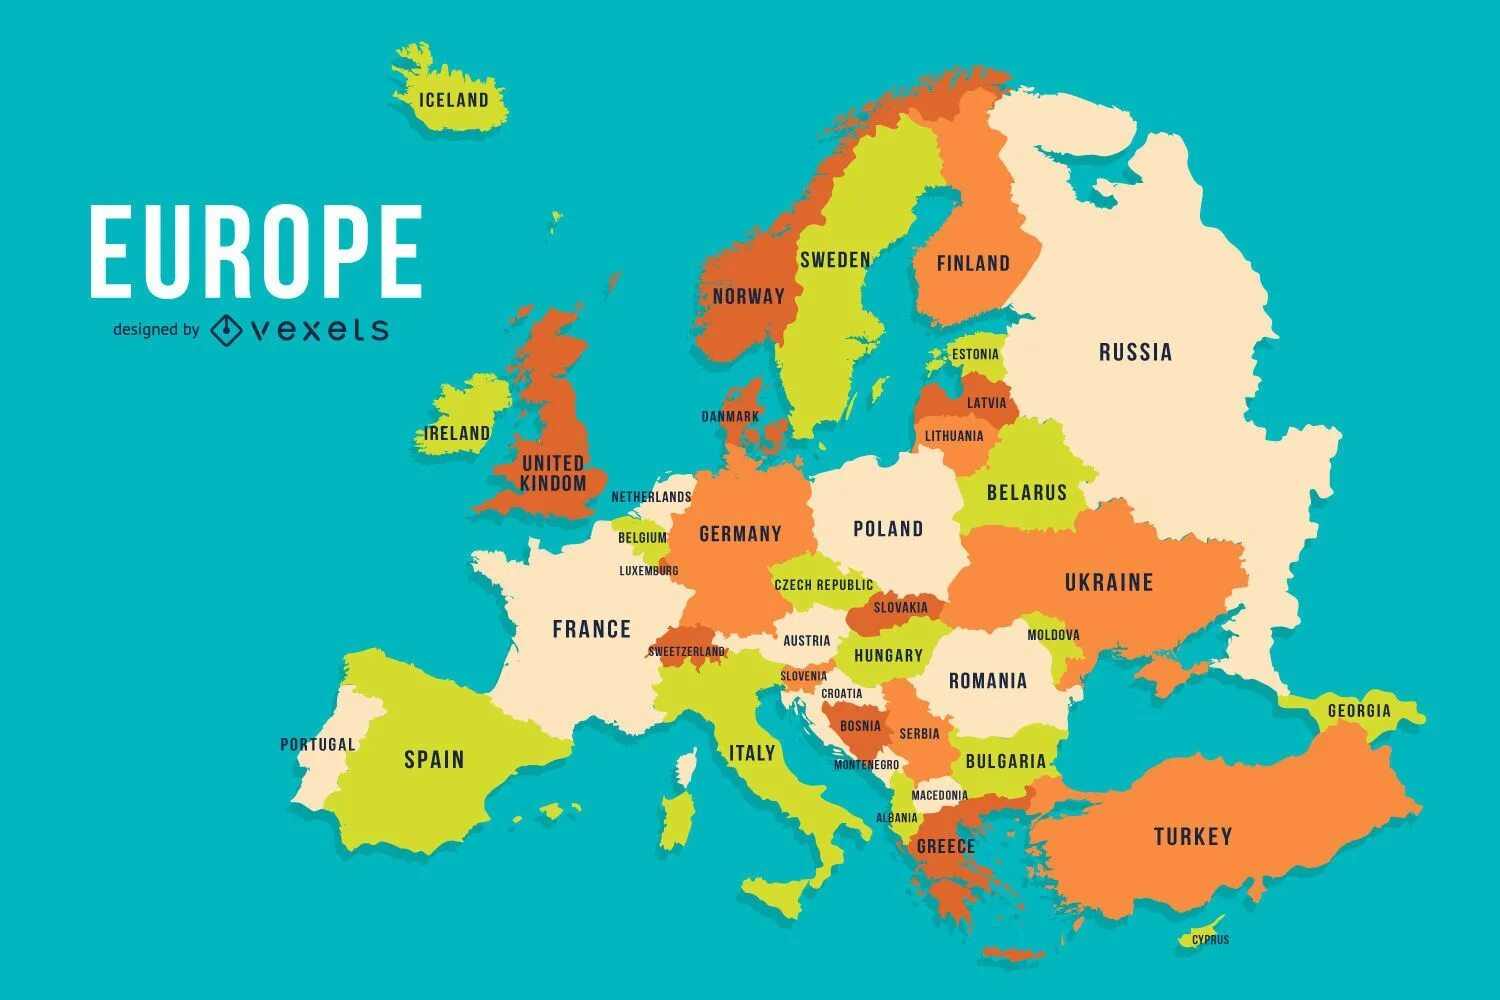 Europa de. Карта - Европа. Карта Европы со странами. Карта европейского континента. Карта European Countries.